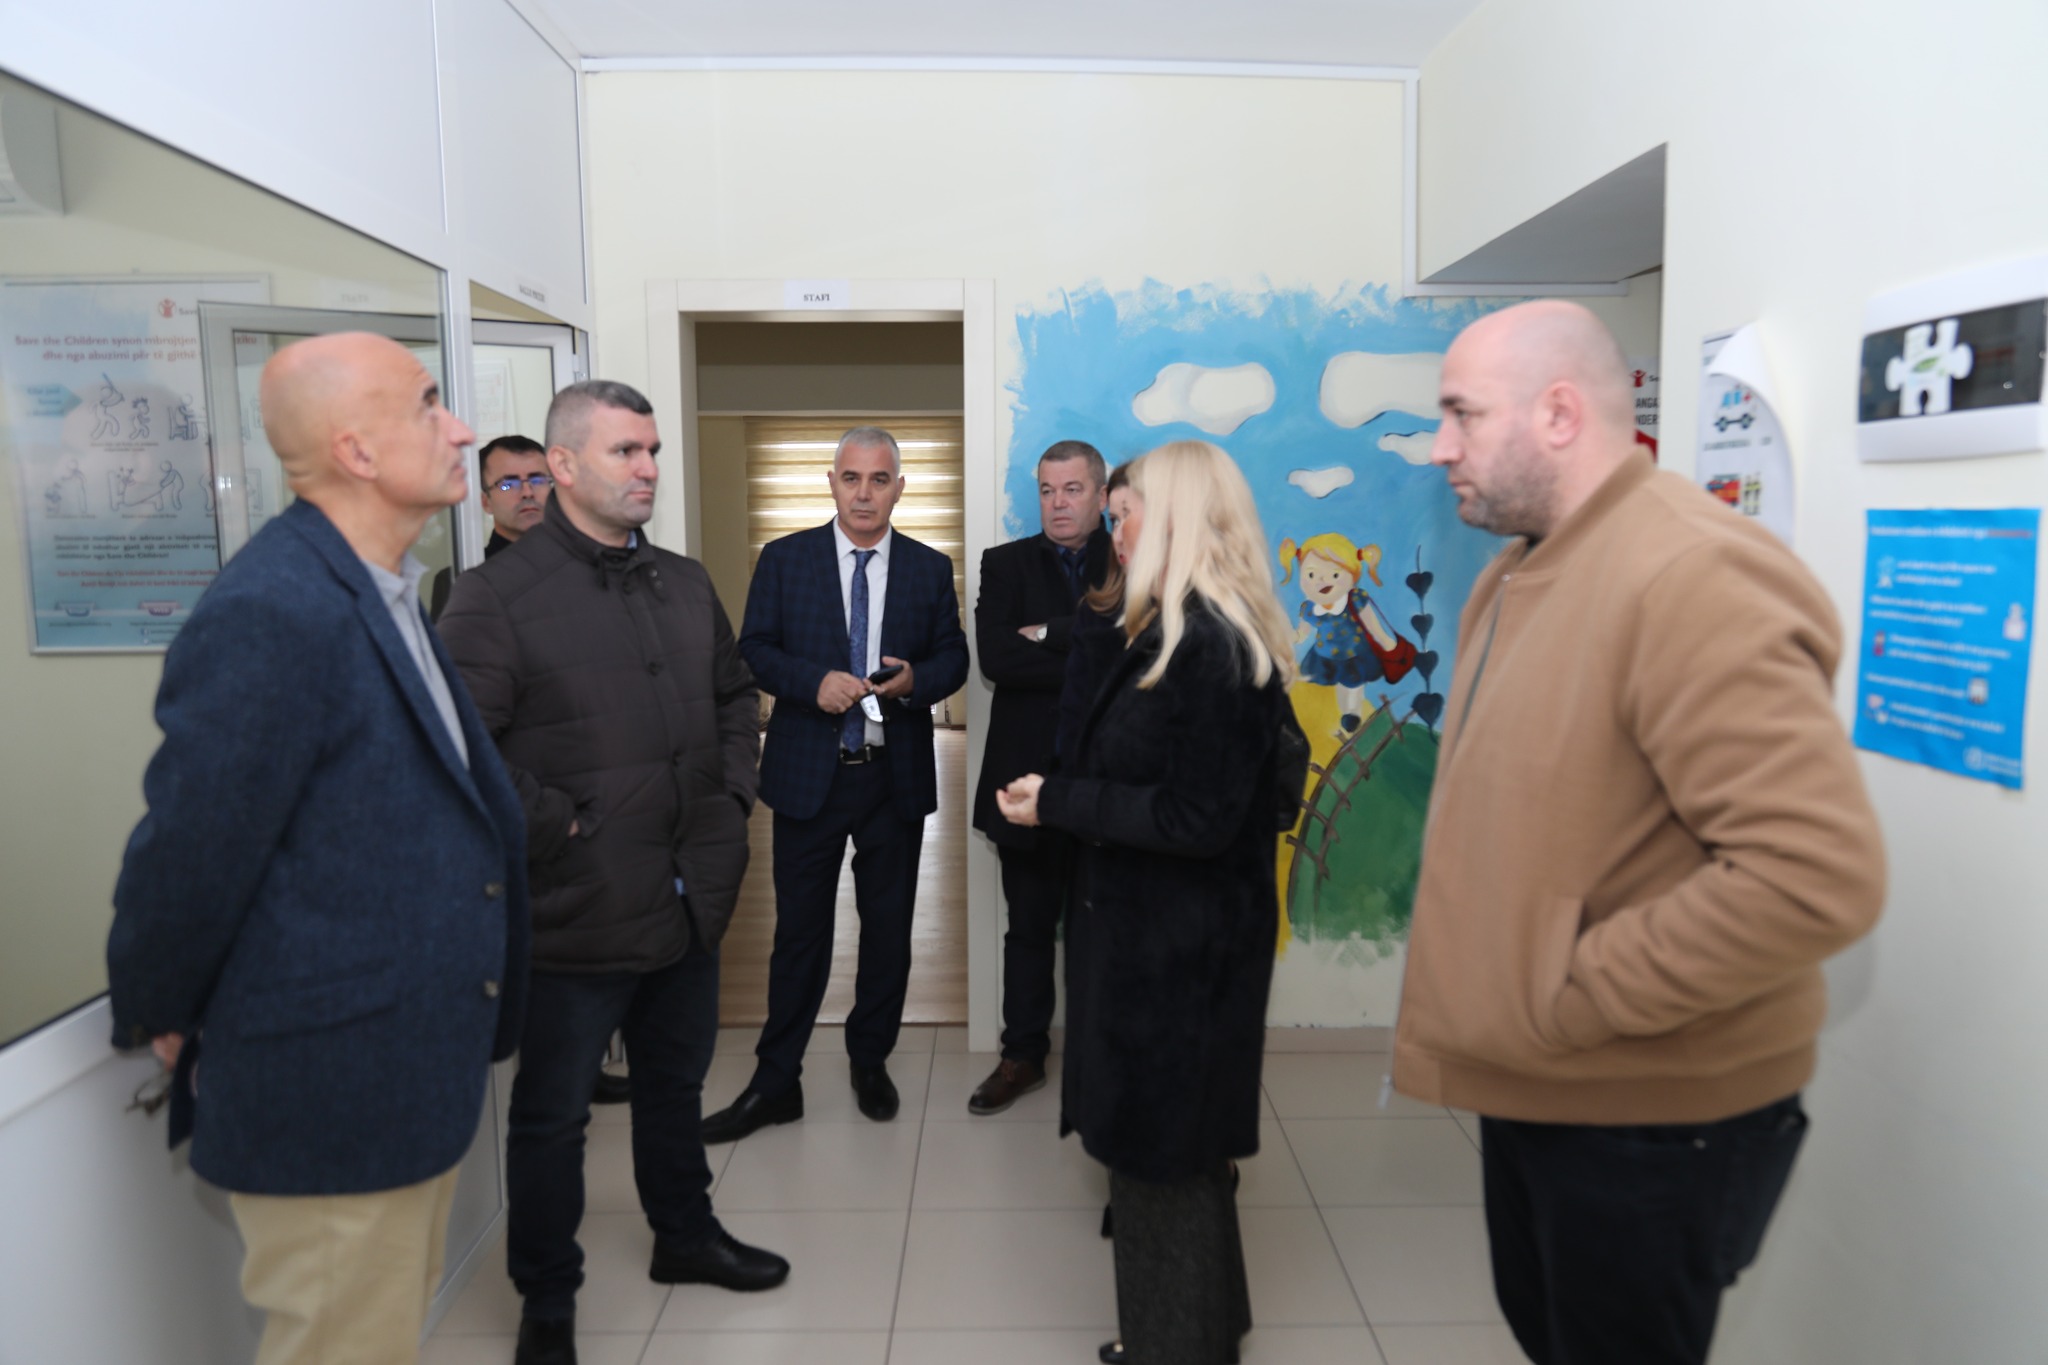 Kryetari i Bashkisë Kukës z. Albert Halilaj mirëpriti Drejtorin e Përgjithshëm të Raiffeisen Bank të Shqipërisë z. Christian Canacaris